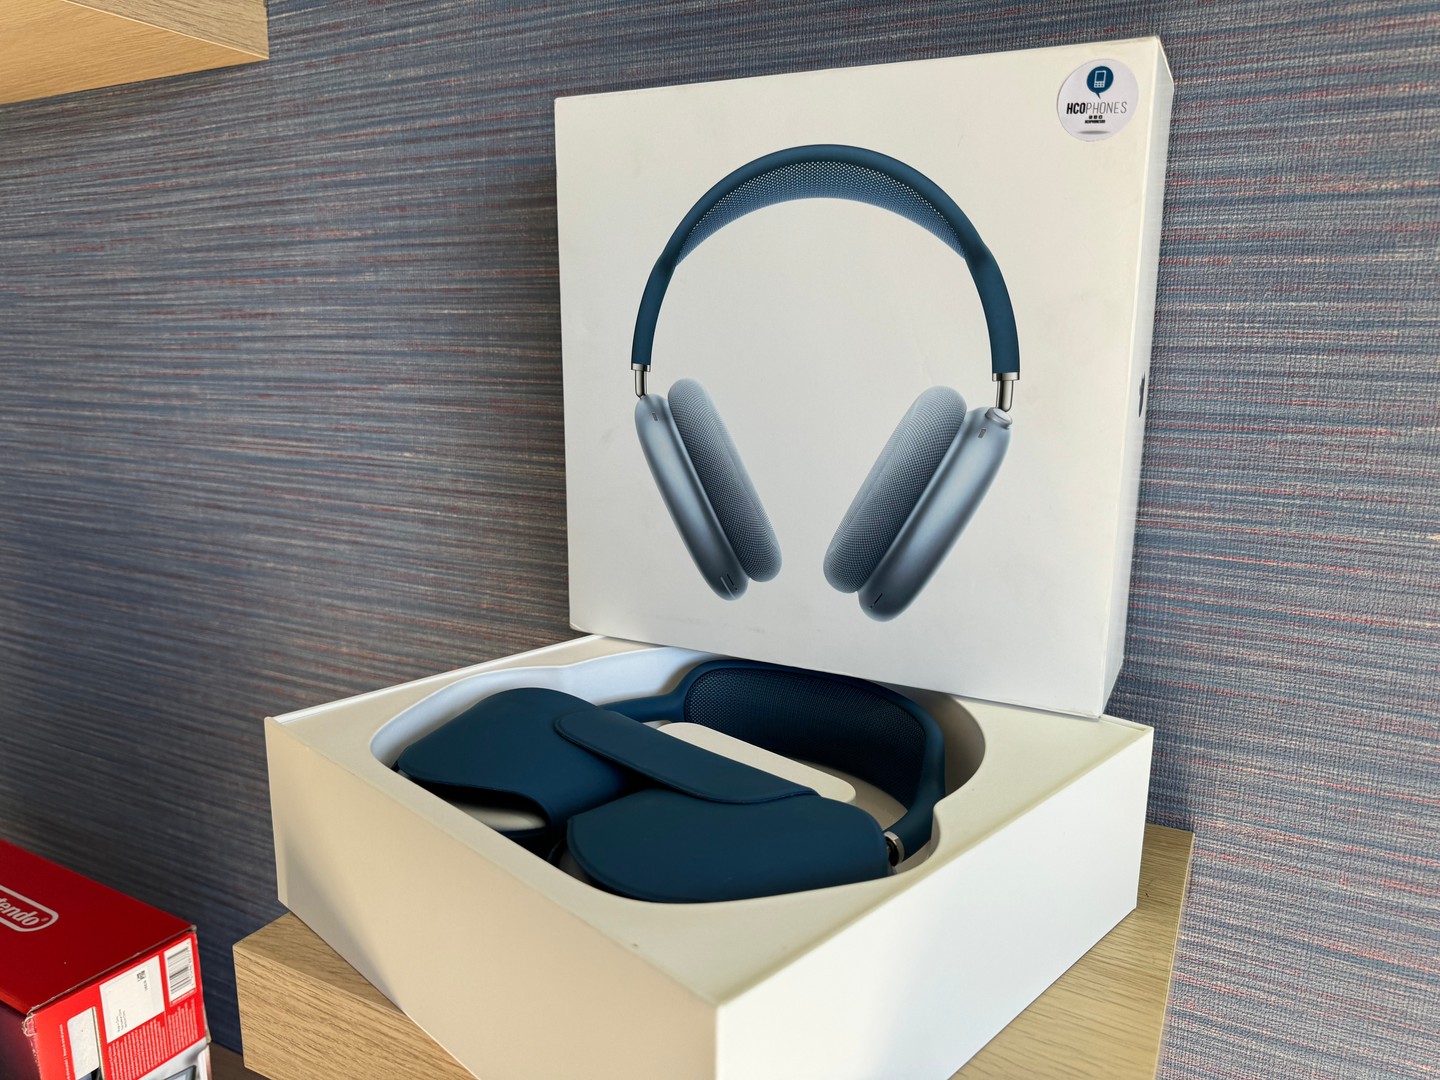 camaras y audio - Airpods Max Azul Como Nuevo en su Caja , 100% Originales RD$ 25,500 NEG| Tienda 1